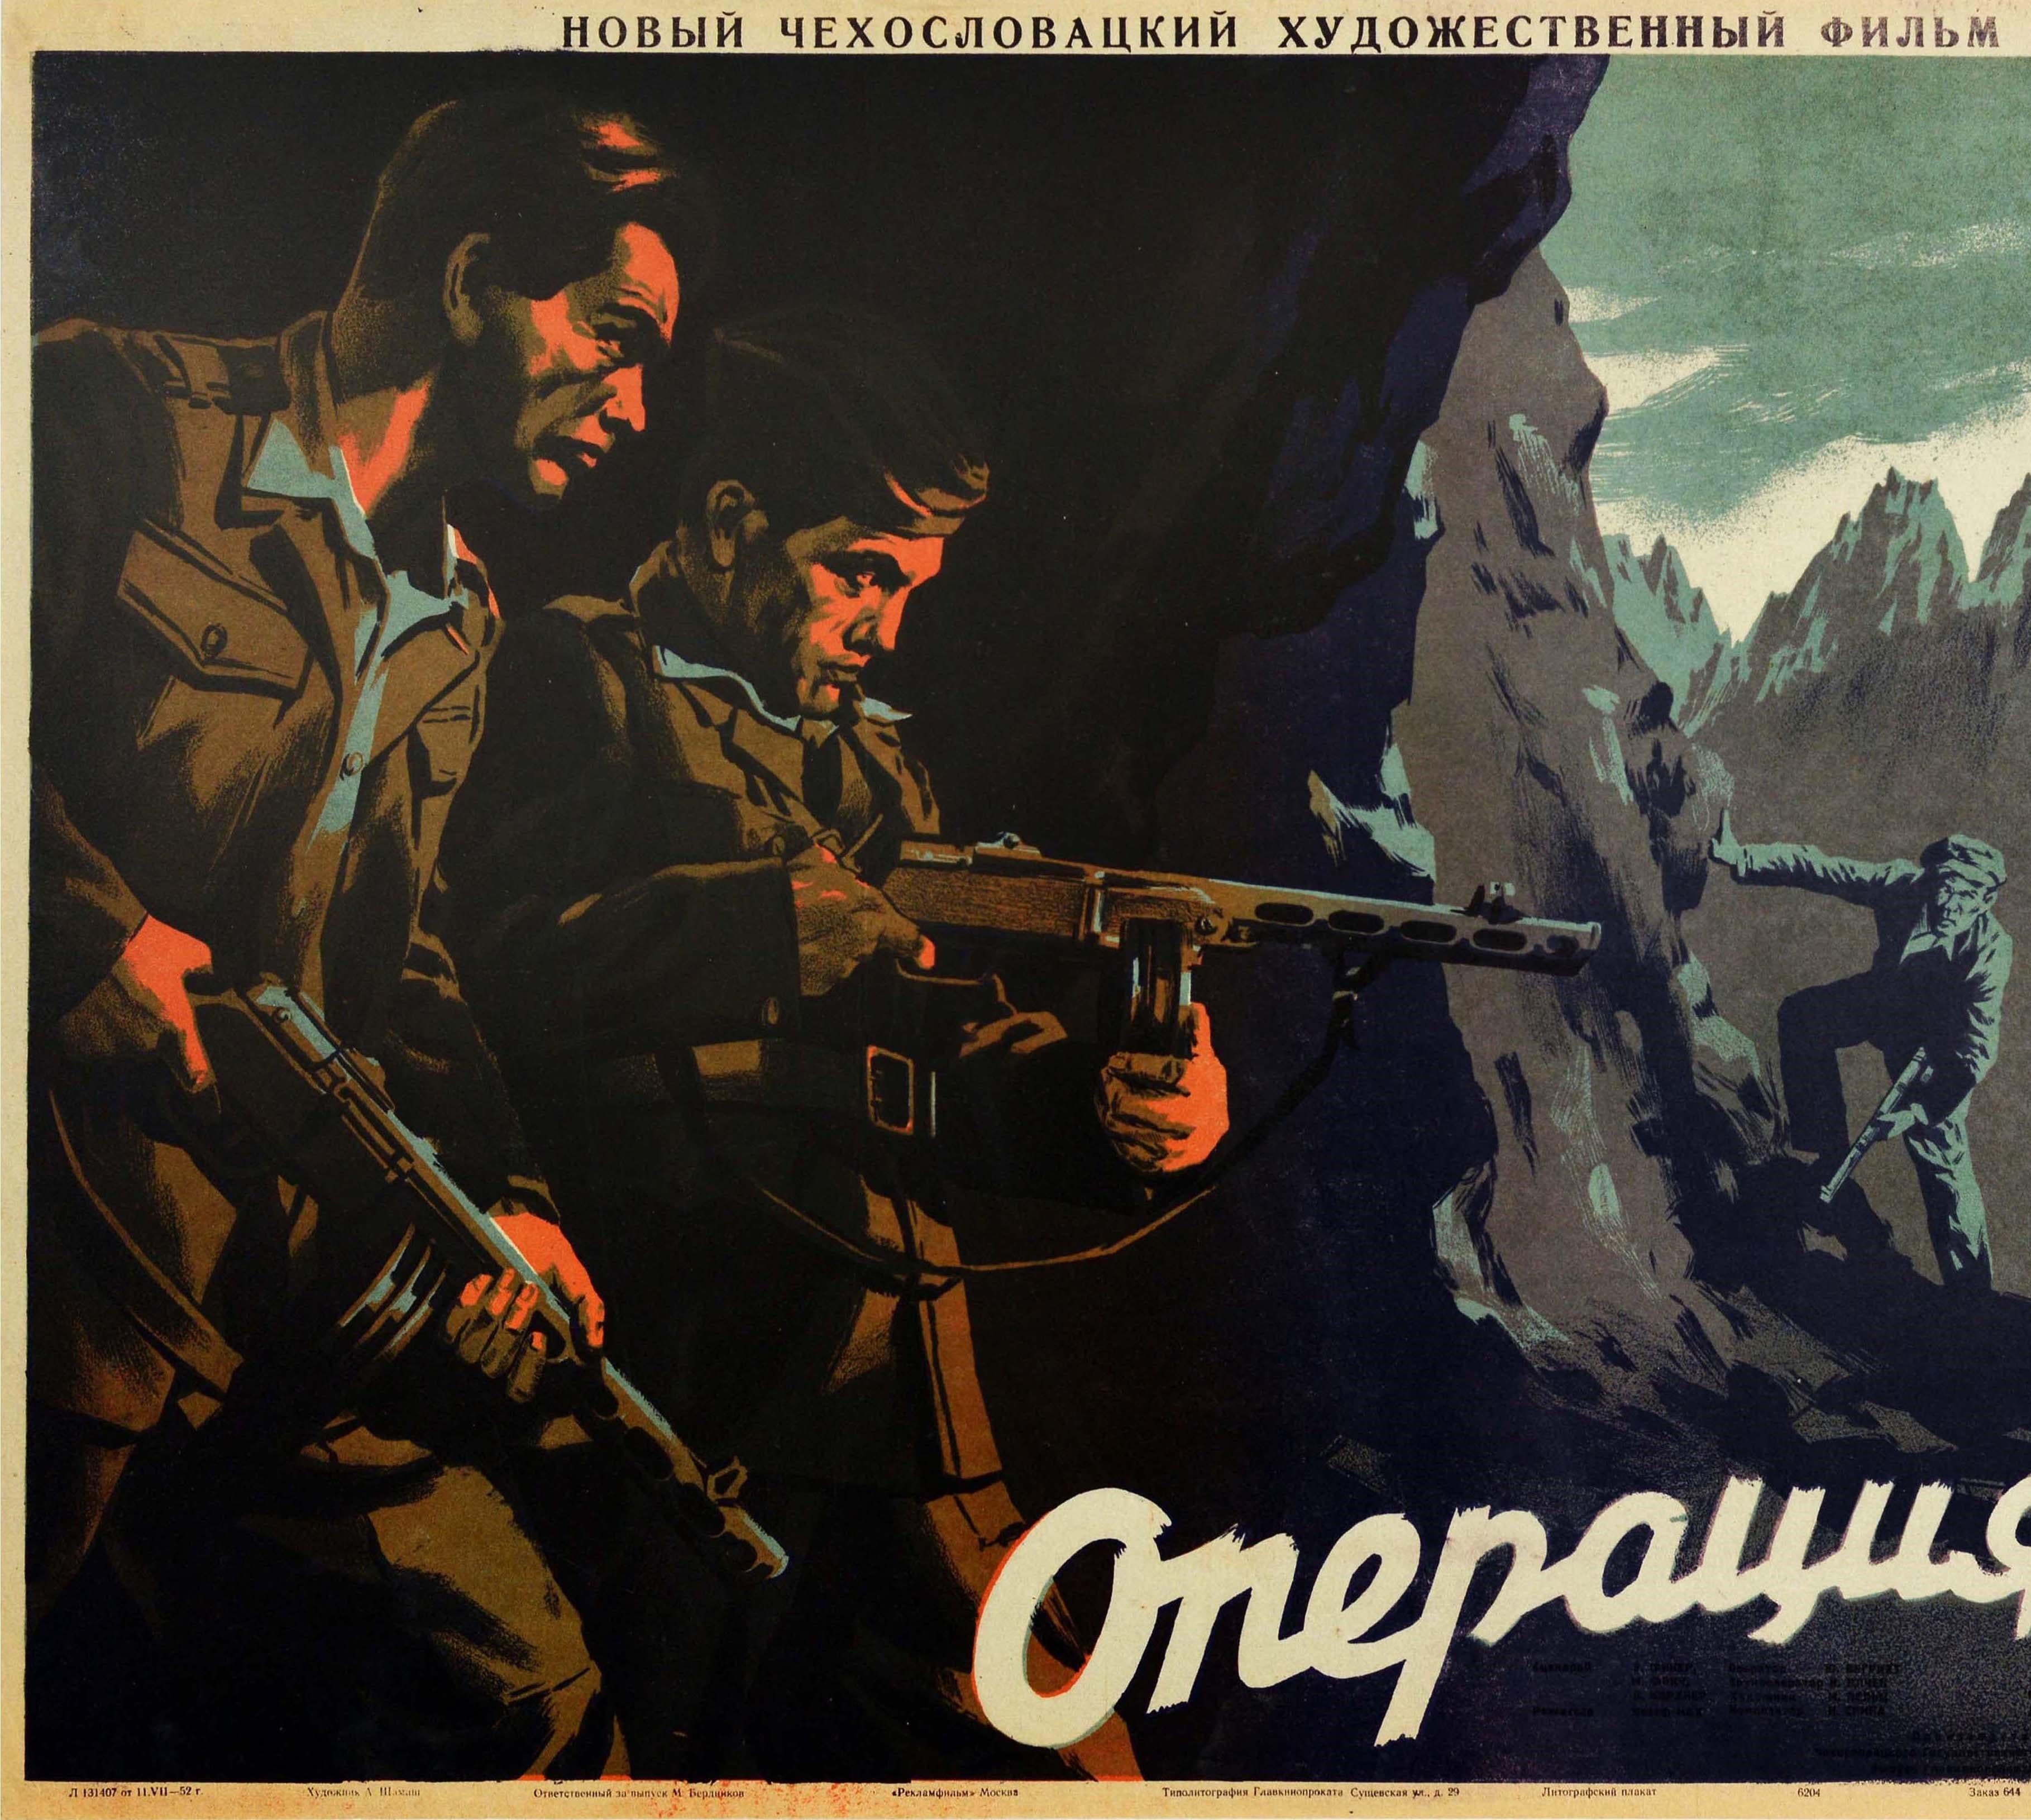 Original-Kinoplakat für den russischen Kinostart des tschechoslowakischen Action-Drama-Abenteuerfilms Akce B / Action B / ???????? ? mit einer Szene, in der sich drei Männer vorsichtig zwei Soldaten in Militäruniform und mit Gewehren bewaffnet in